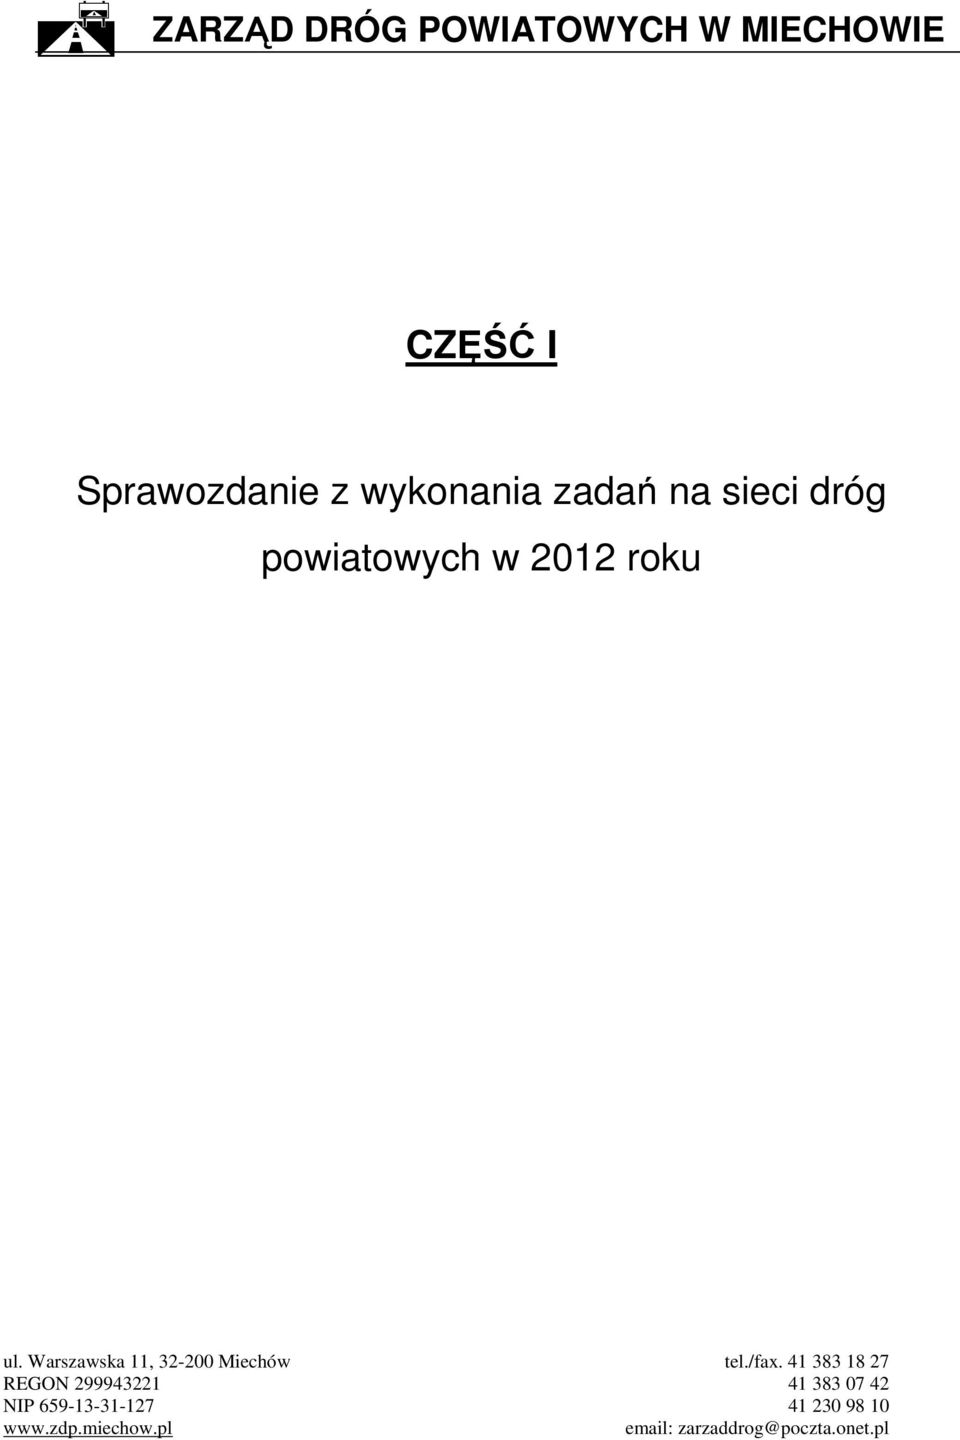 Warszawska 11, 32-200 Miechów tel./fax.